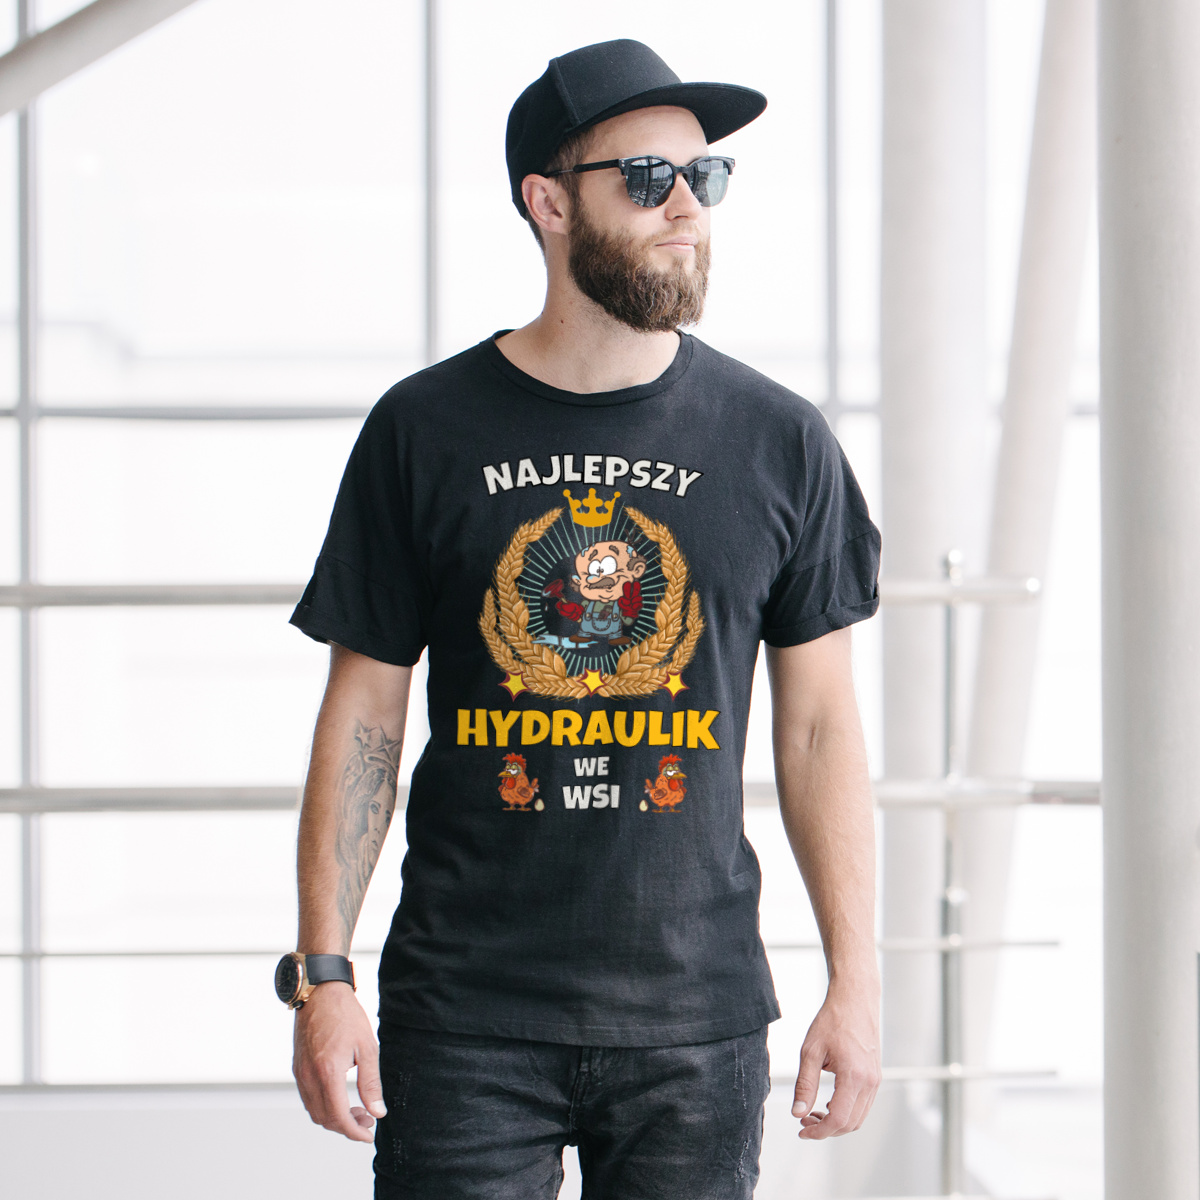 Najlepszy Hydraulik We Wsi - Męska Koszulka Czarna